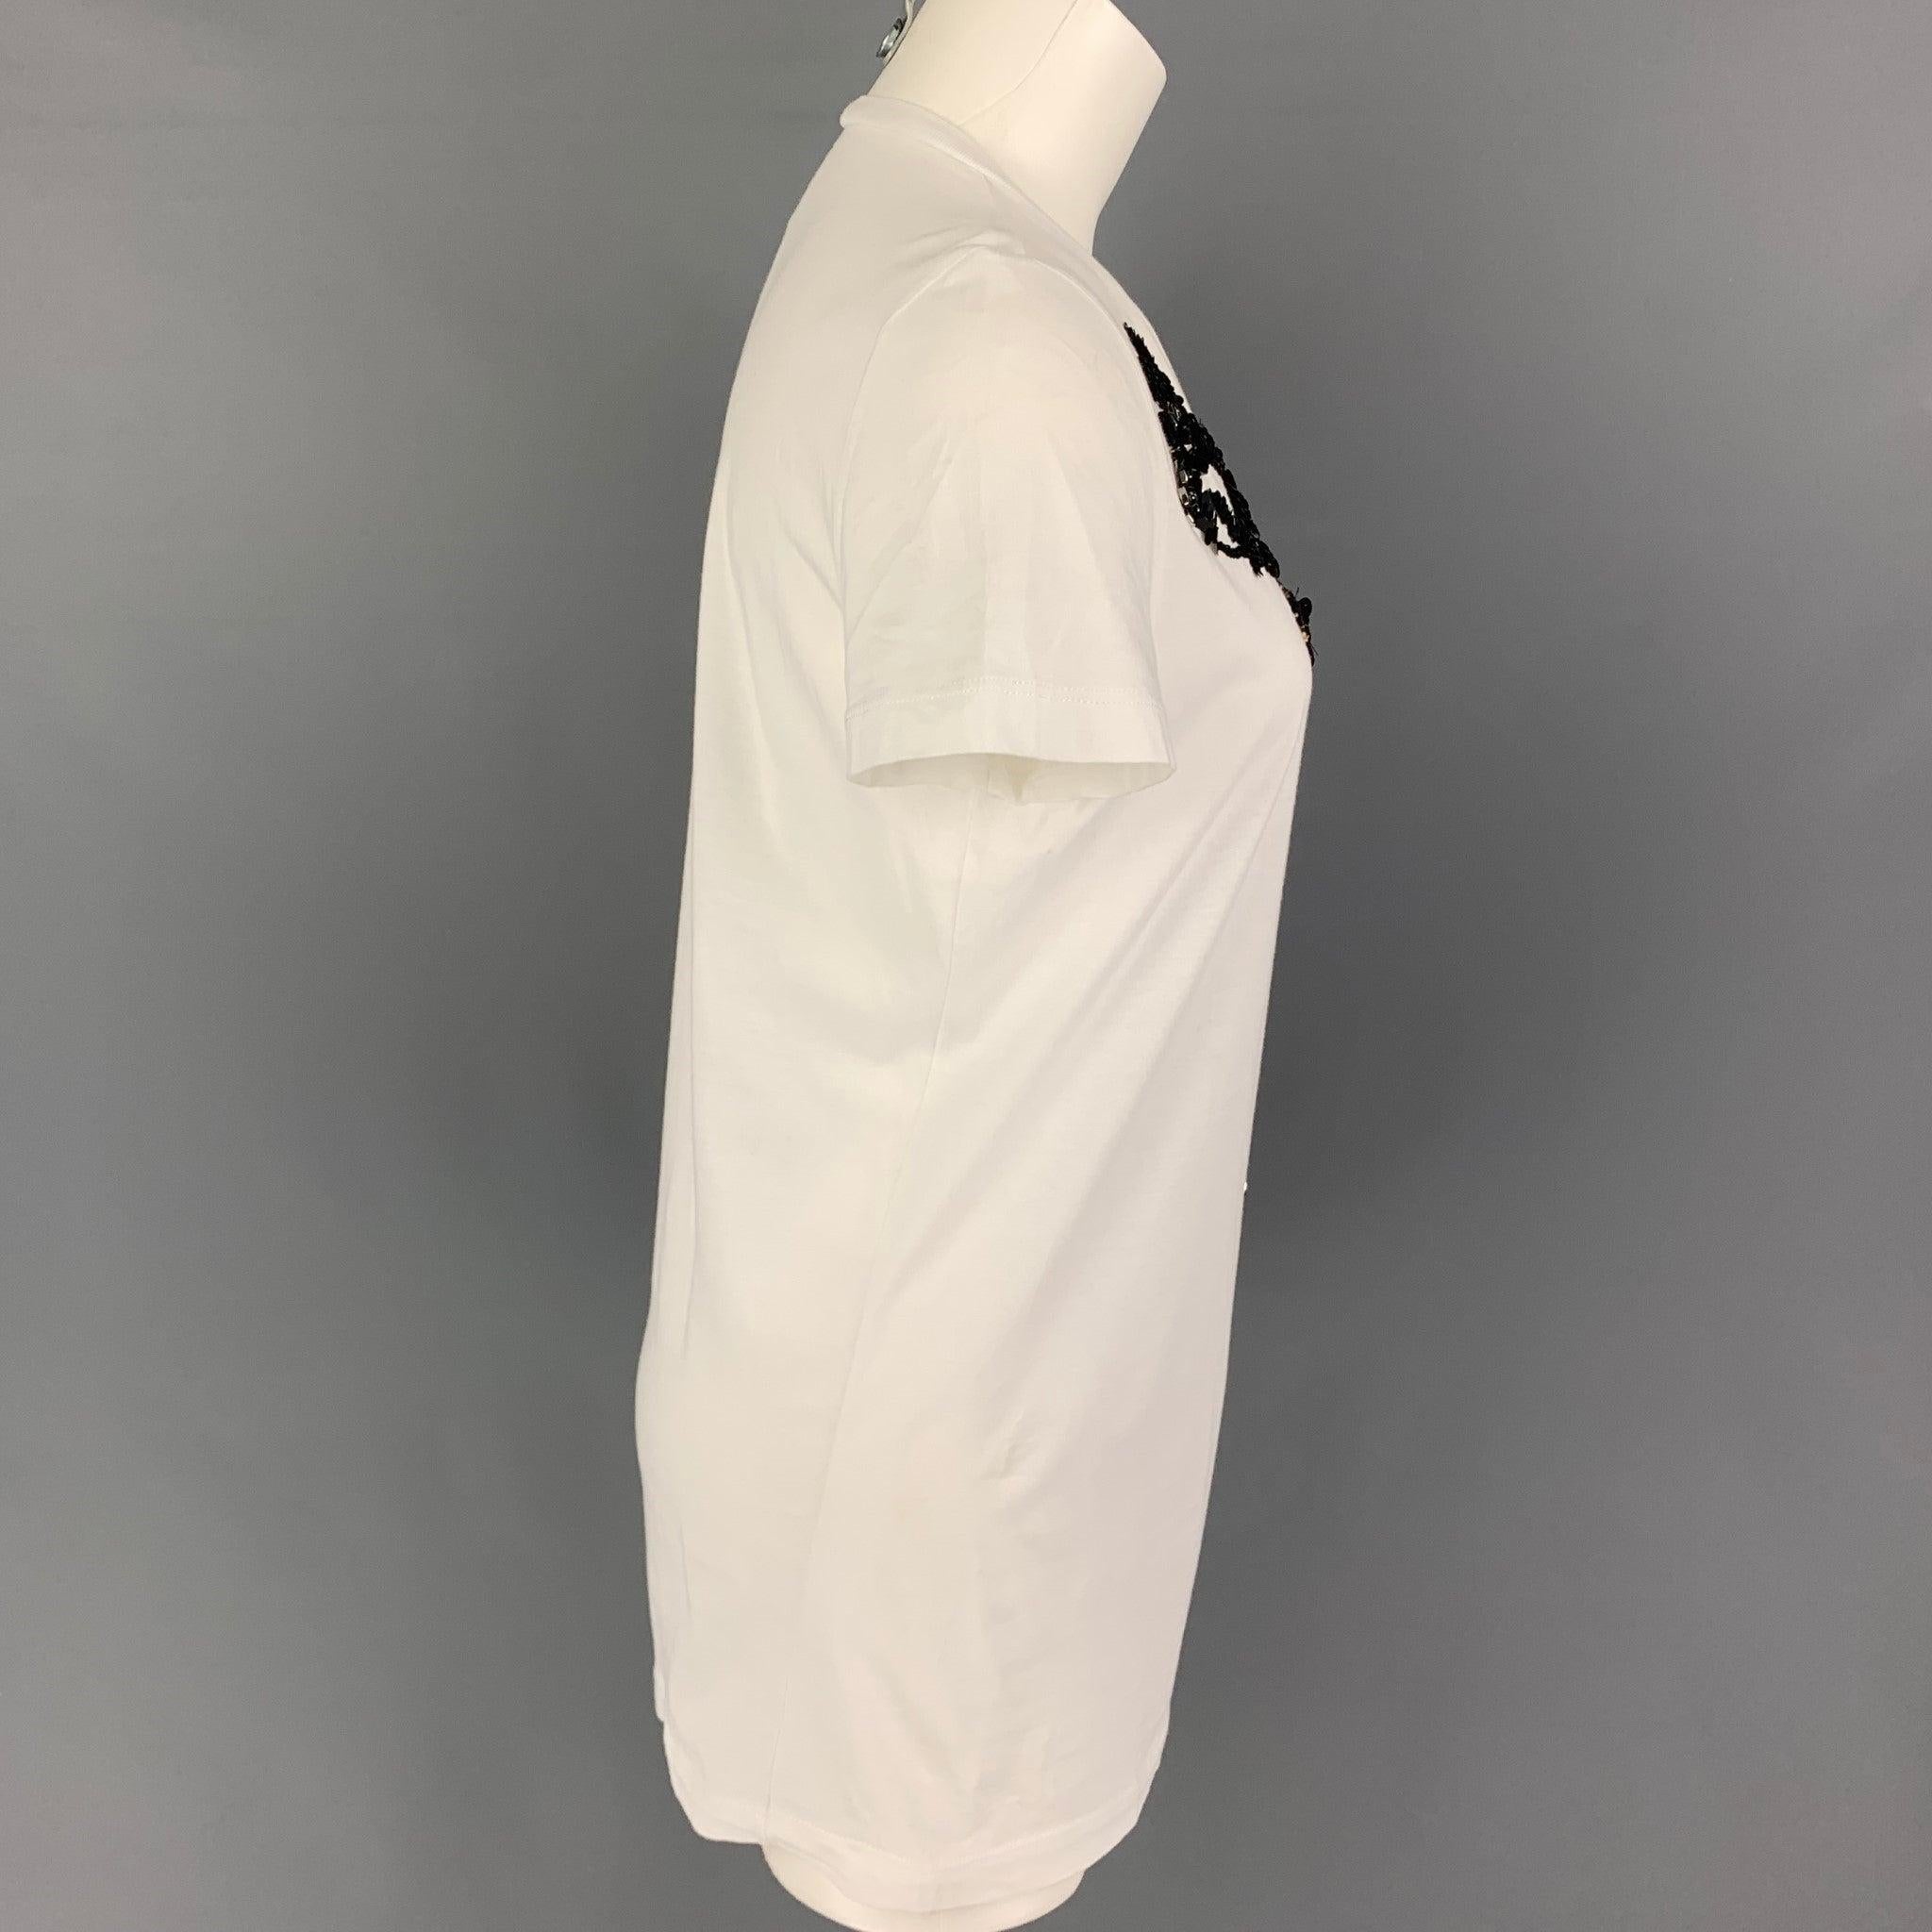 Ce t-shirt en coton blanc de DSQUARED2 présente un motif floral en strass, des détails pailletés et un col ras du cou.
Très bien
Etat d'occasion. Légère usure des strass. Tel quel.  

Marqué :   M  

Mesures : 
 
Épaule : 16 pouces  Poitrine : 36